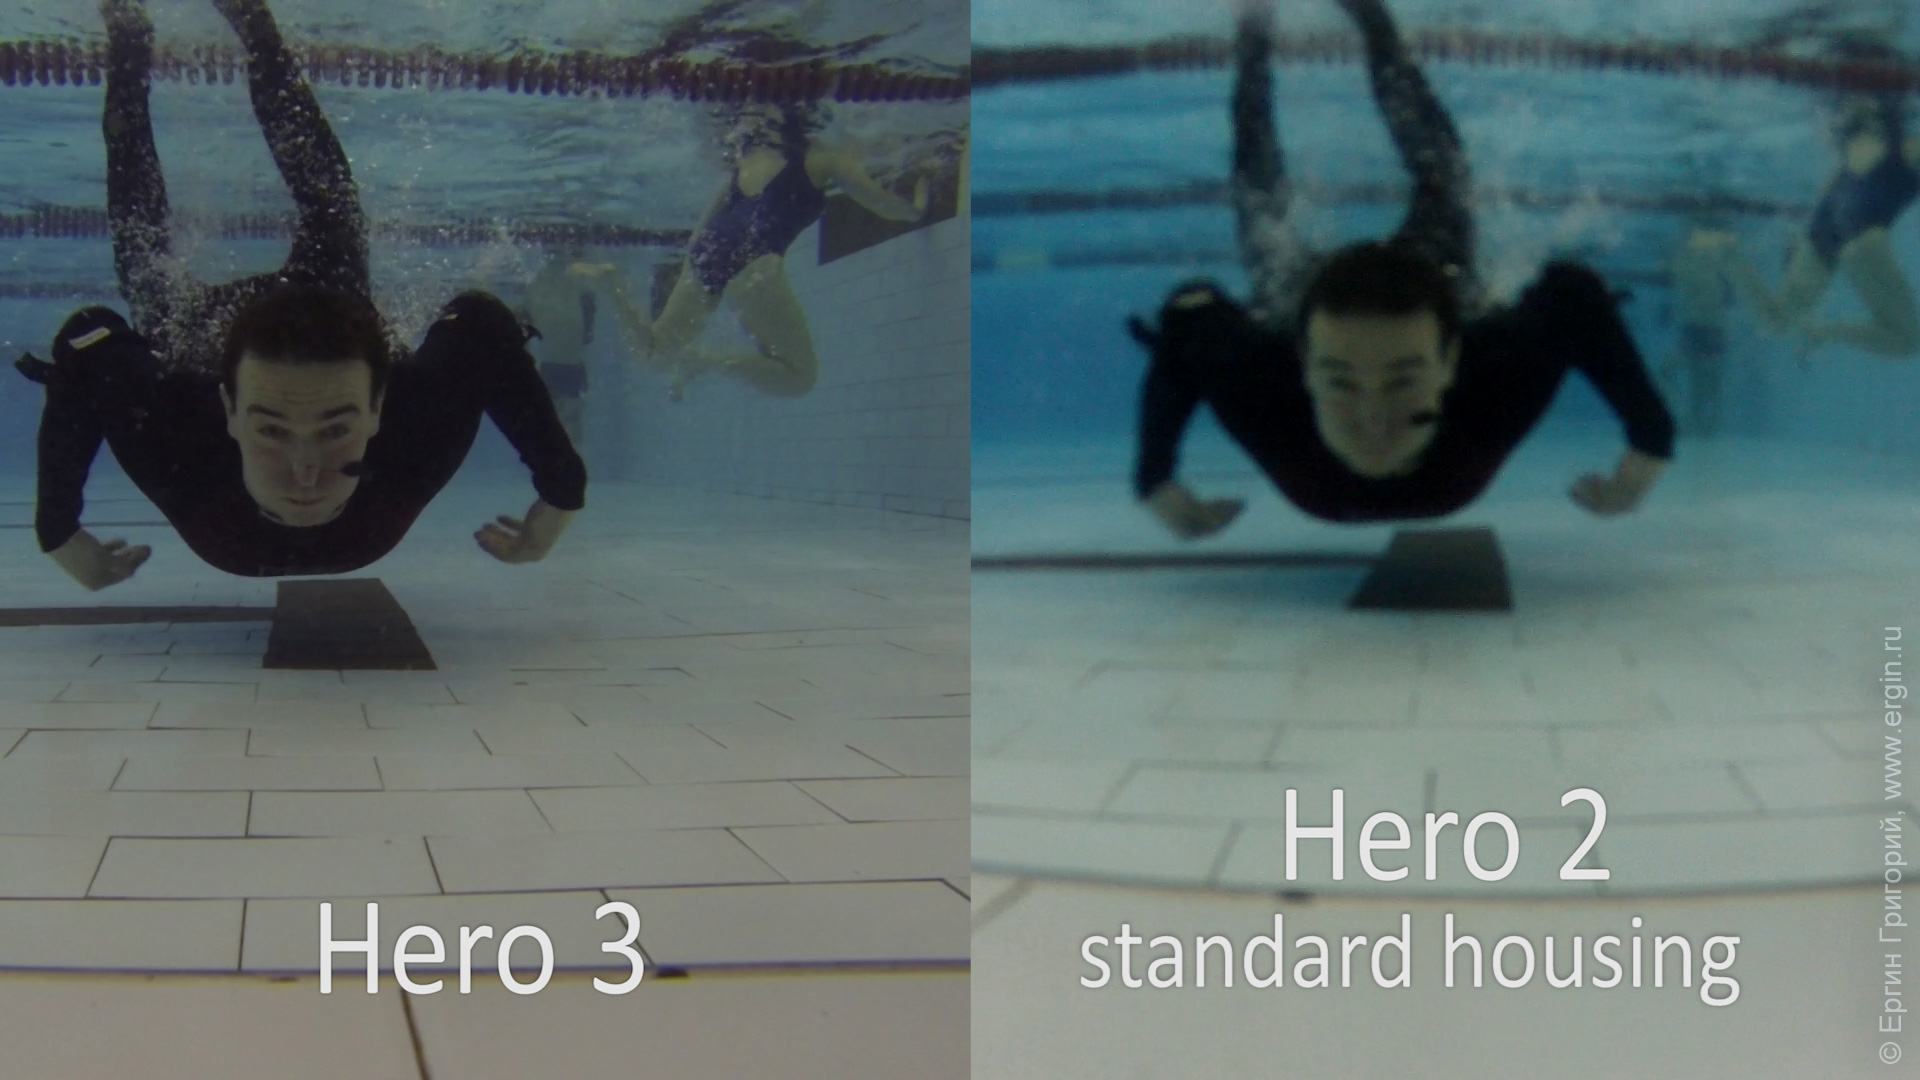 Проверка GoPro Hero 3 vs Hero 2 под водой: standard housing только стандартные аквабоксы нерезко, резкость не наводится